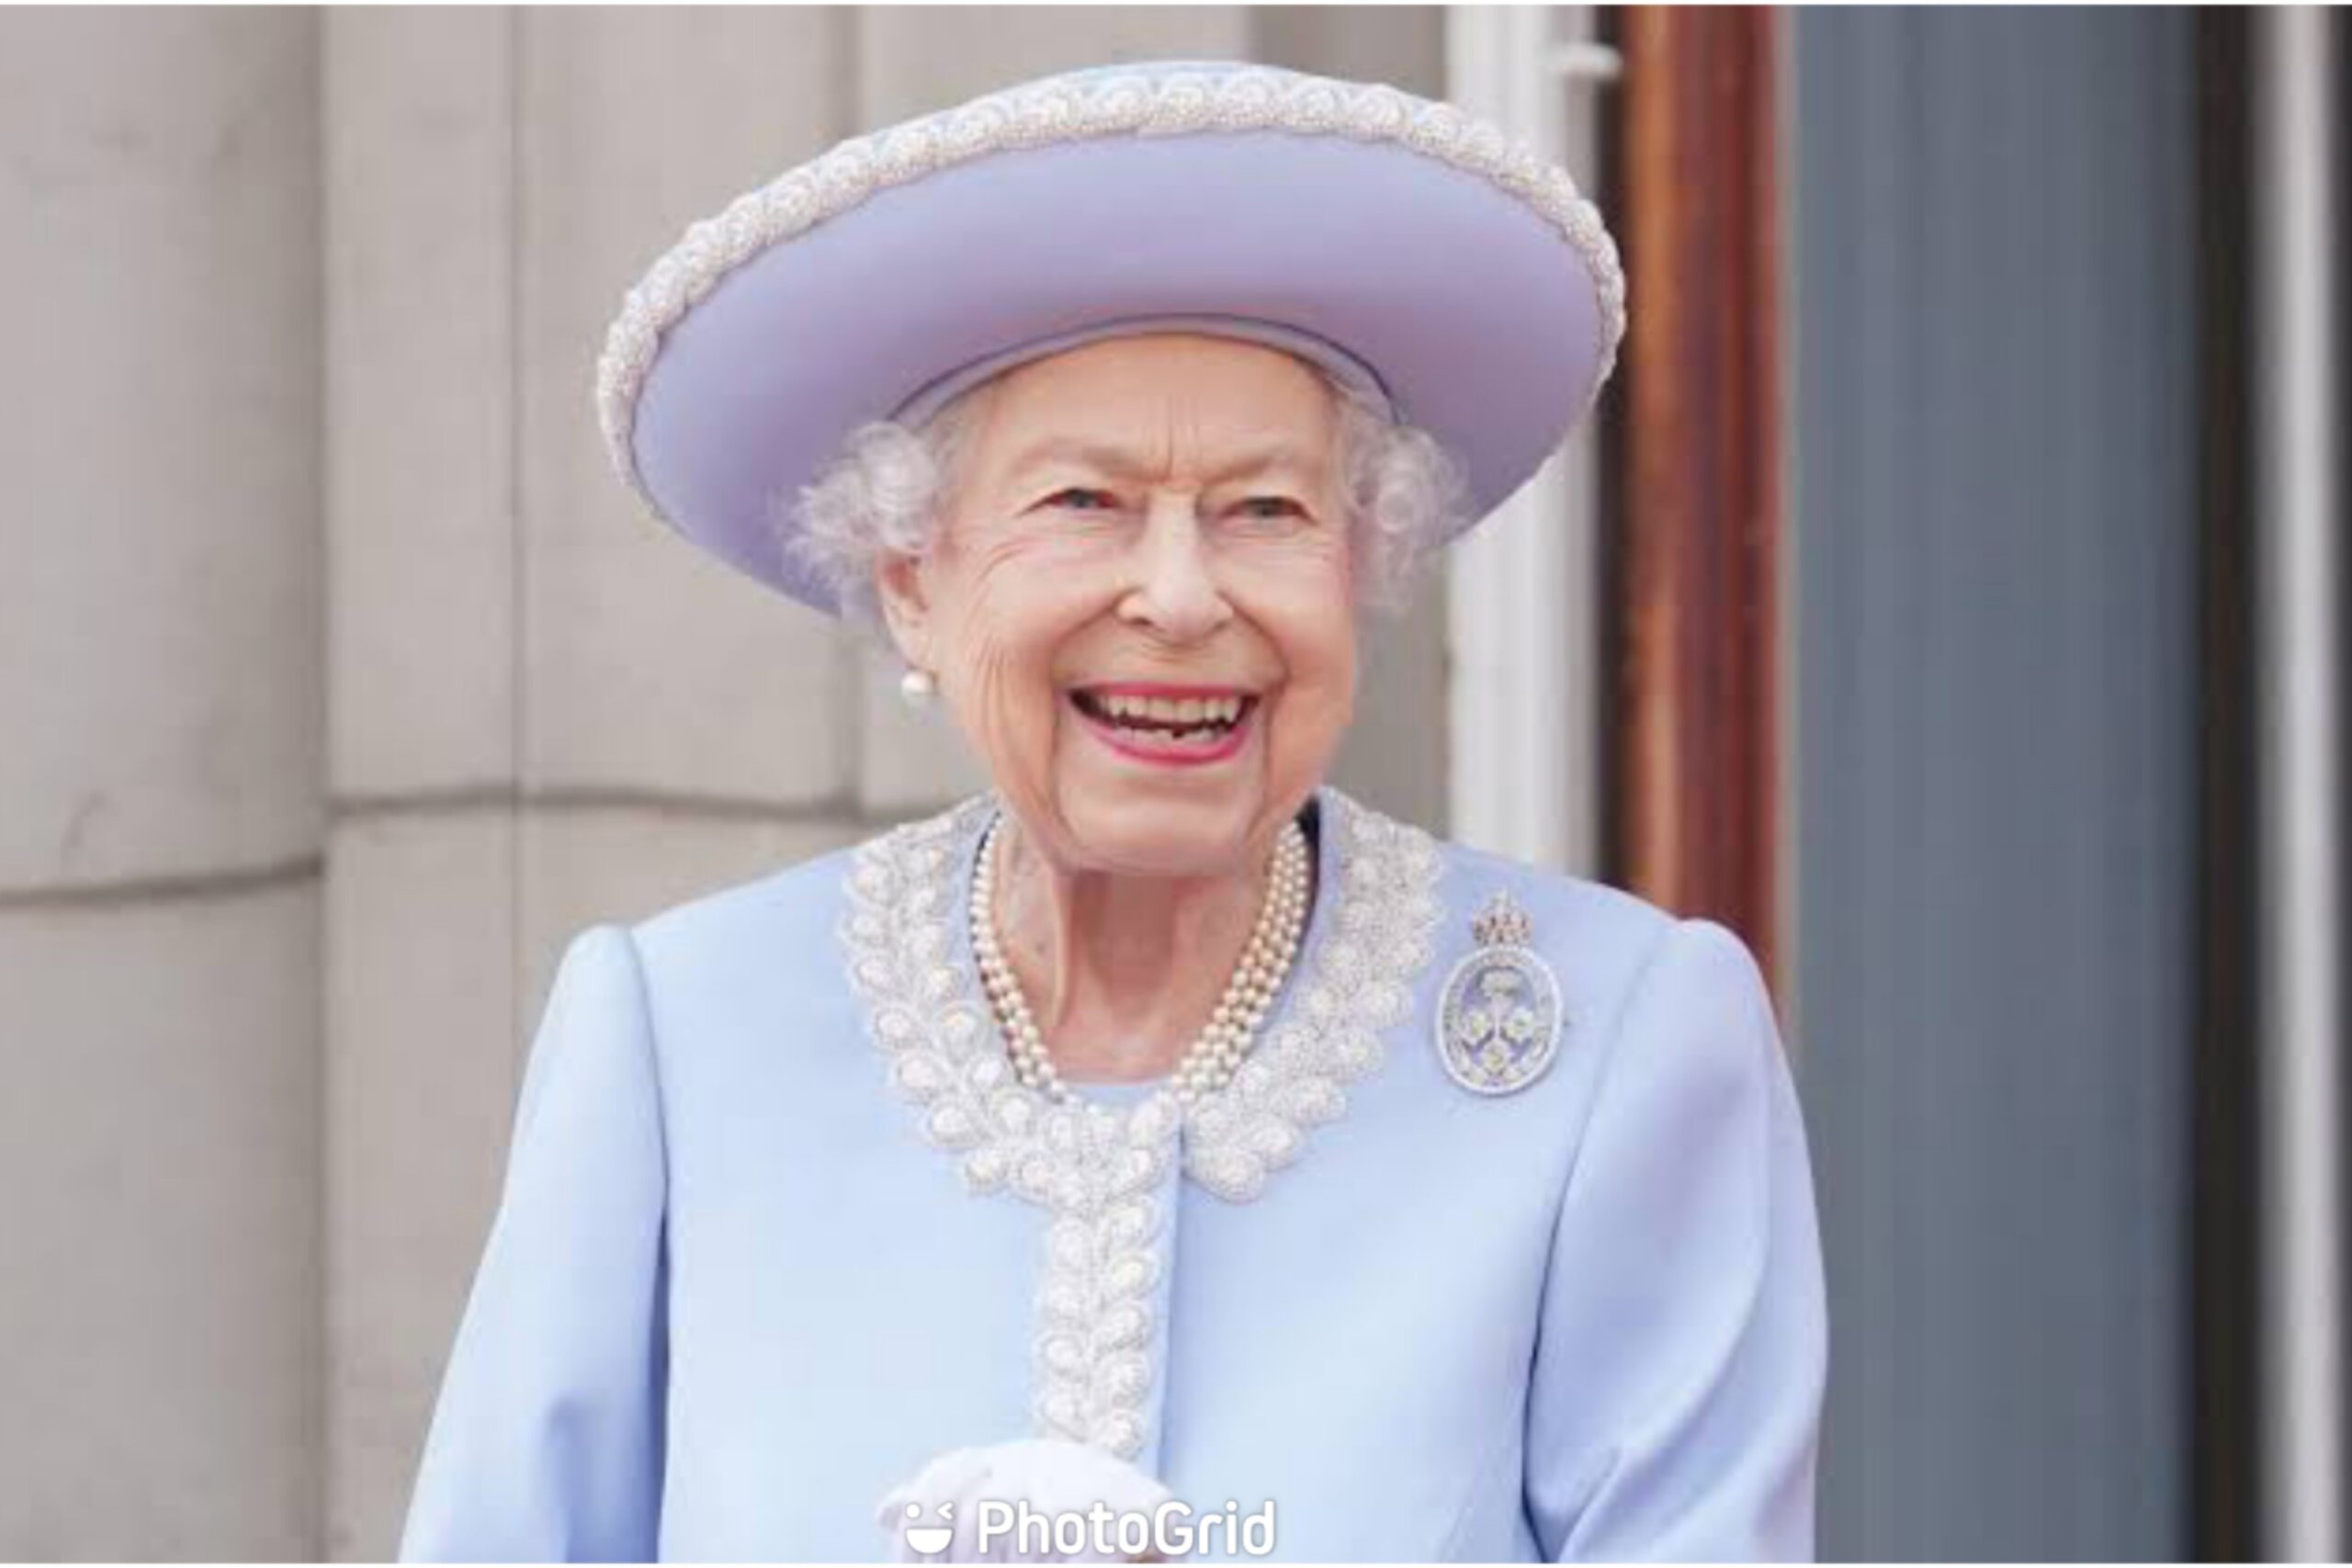 Queen Elizabeth II passes away at 96